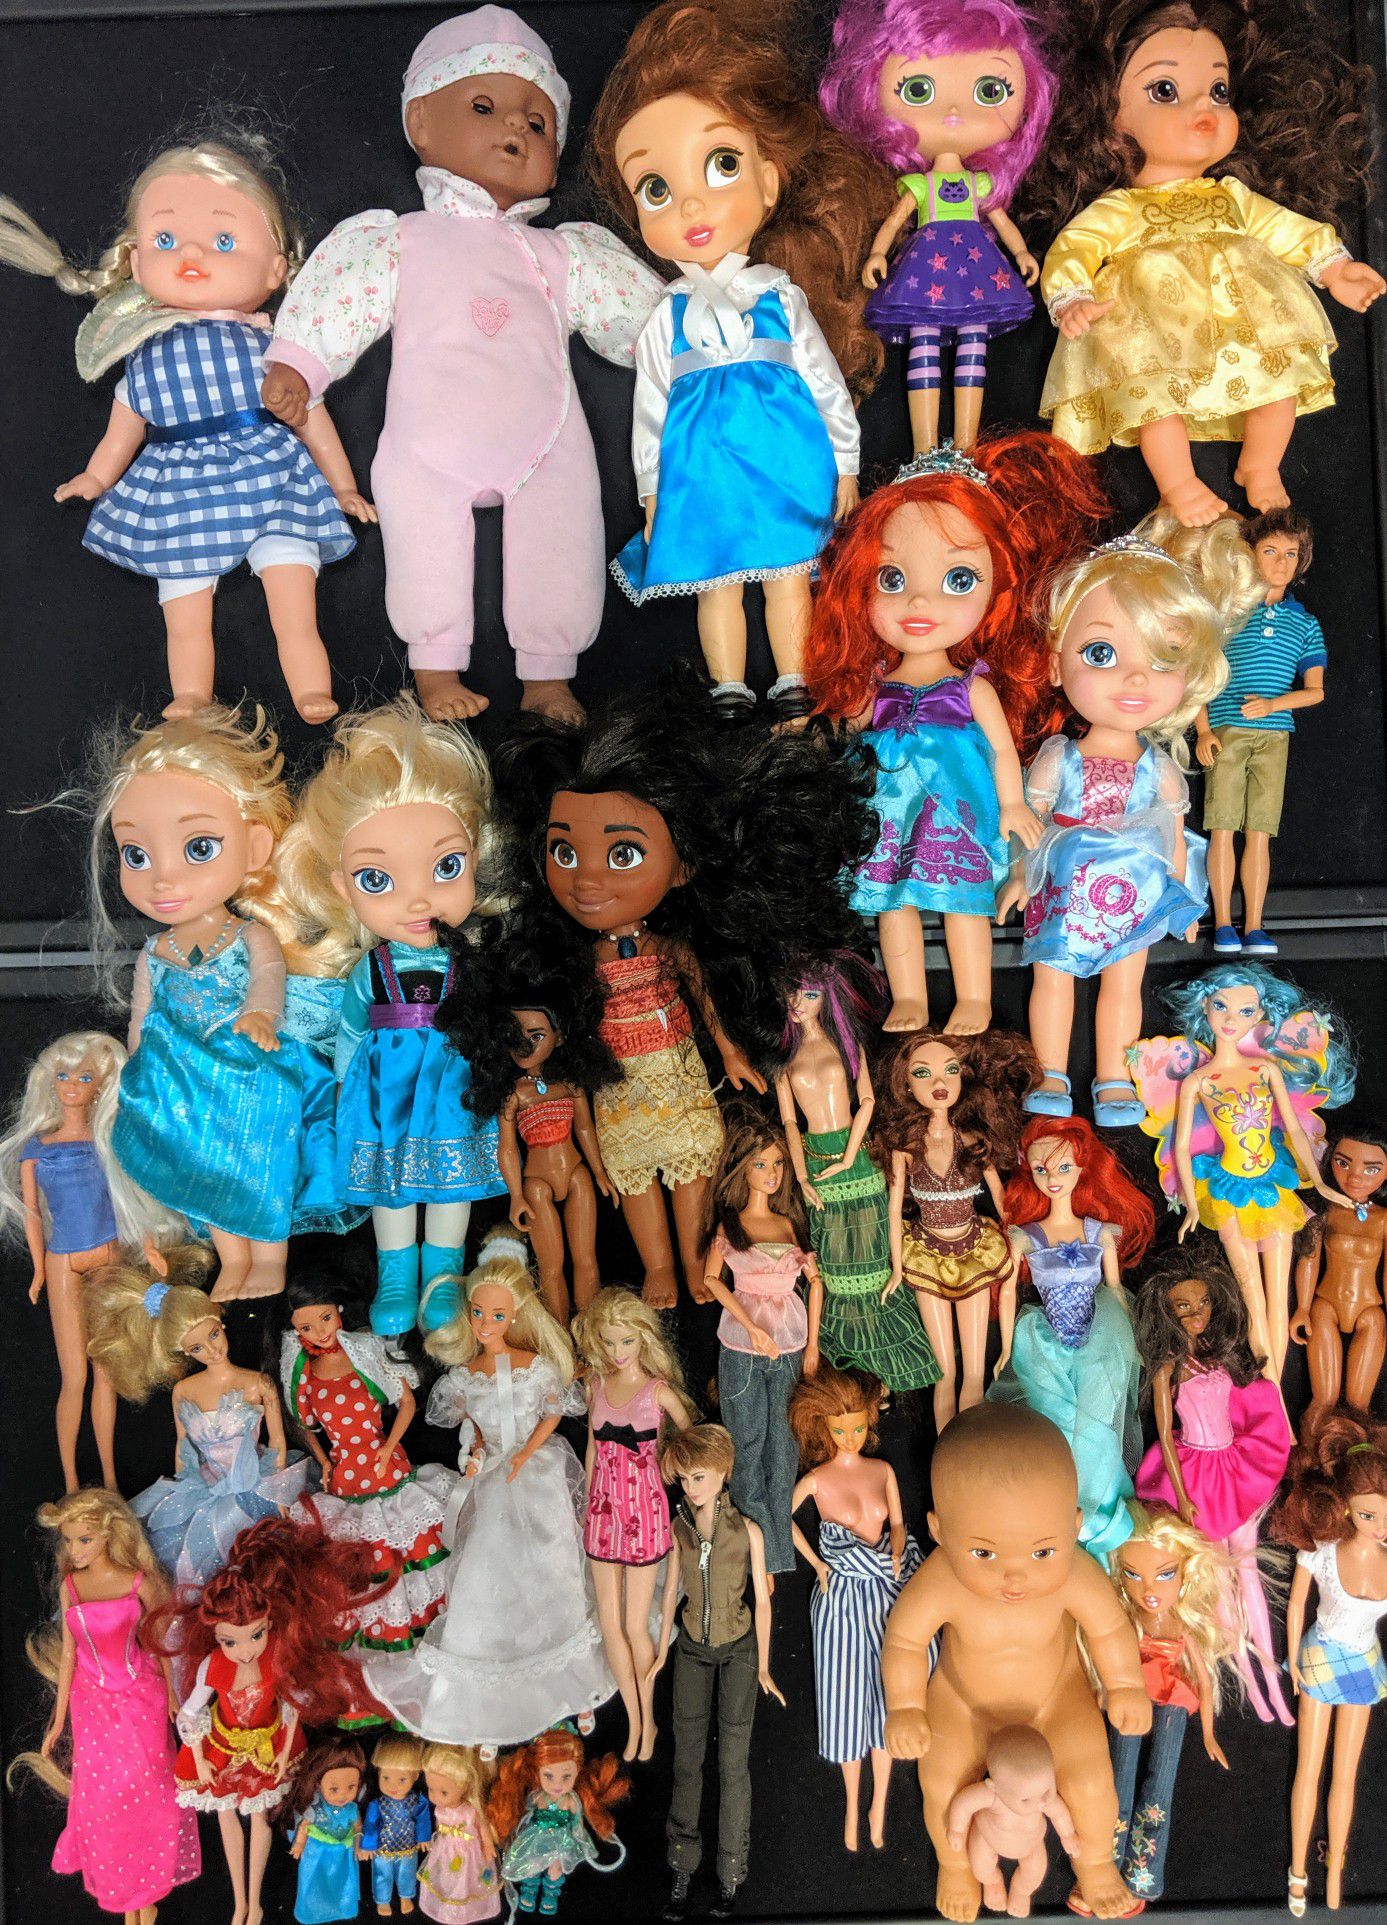 Disney Barbie and Kelly dolls $1 each